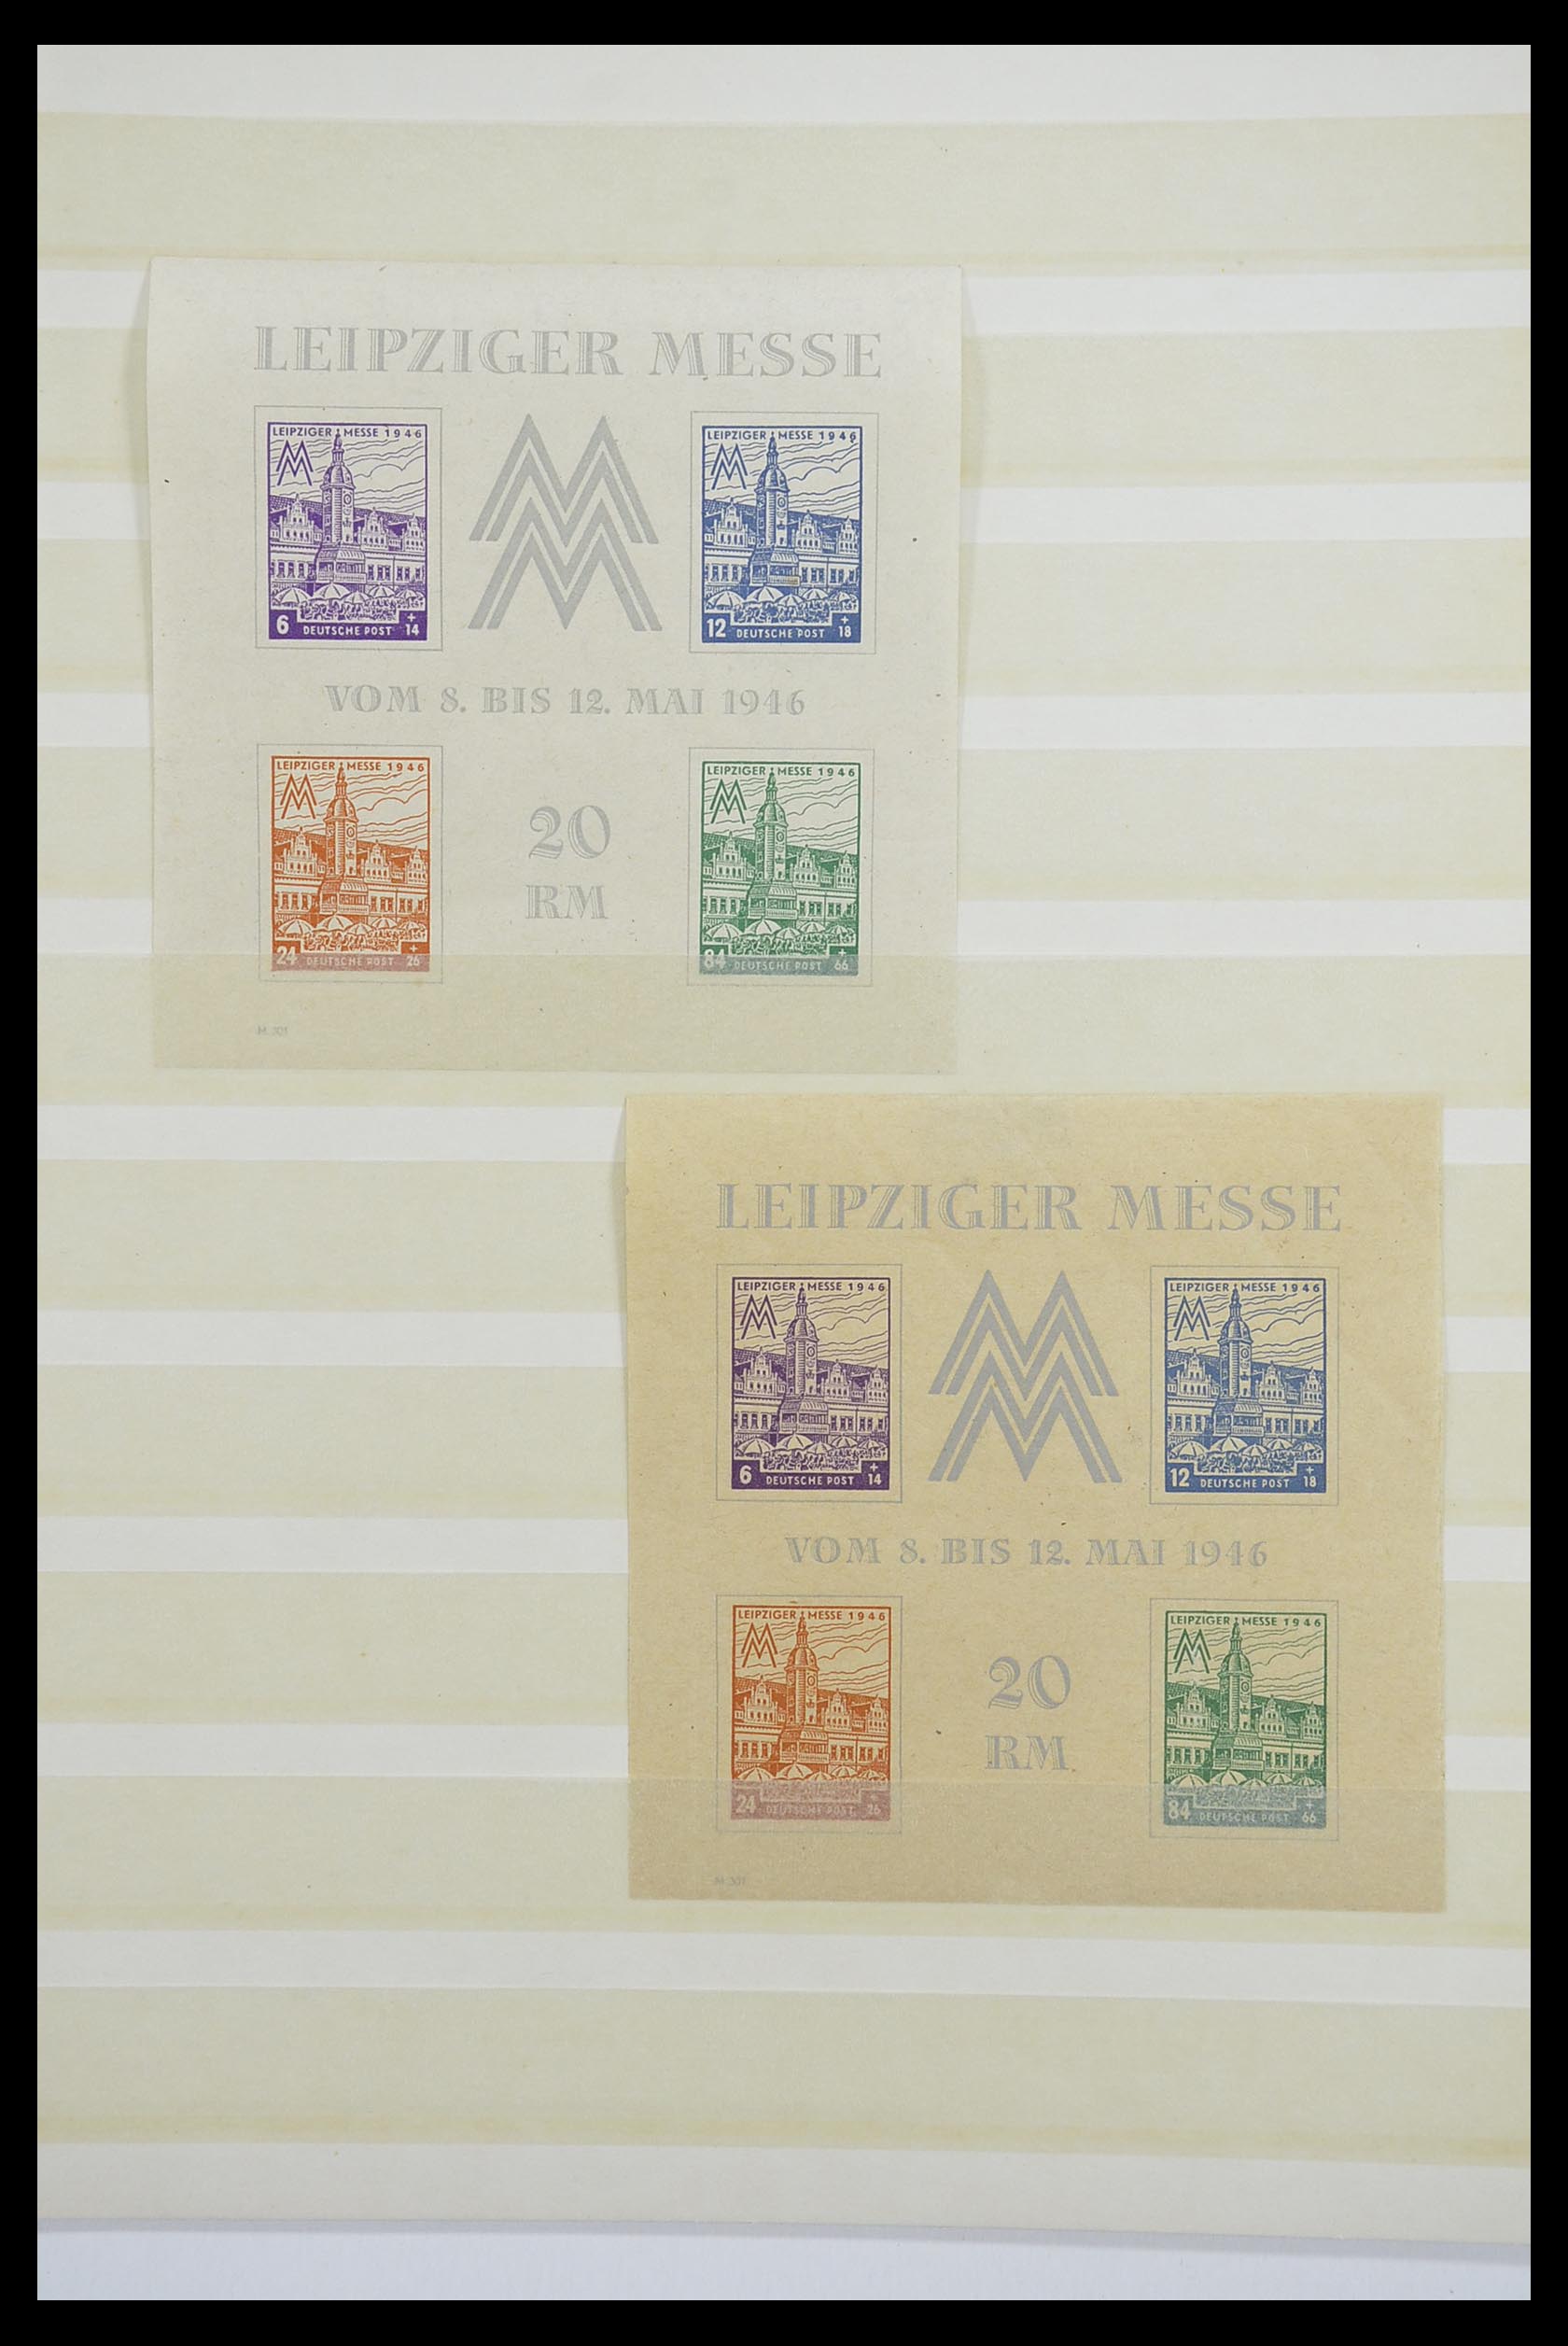 33268 011 - Postzegelverzameling 33268 Duitse lokaalpost en Sovjetzone 1945-1949.